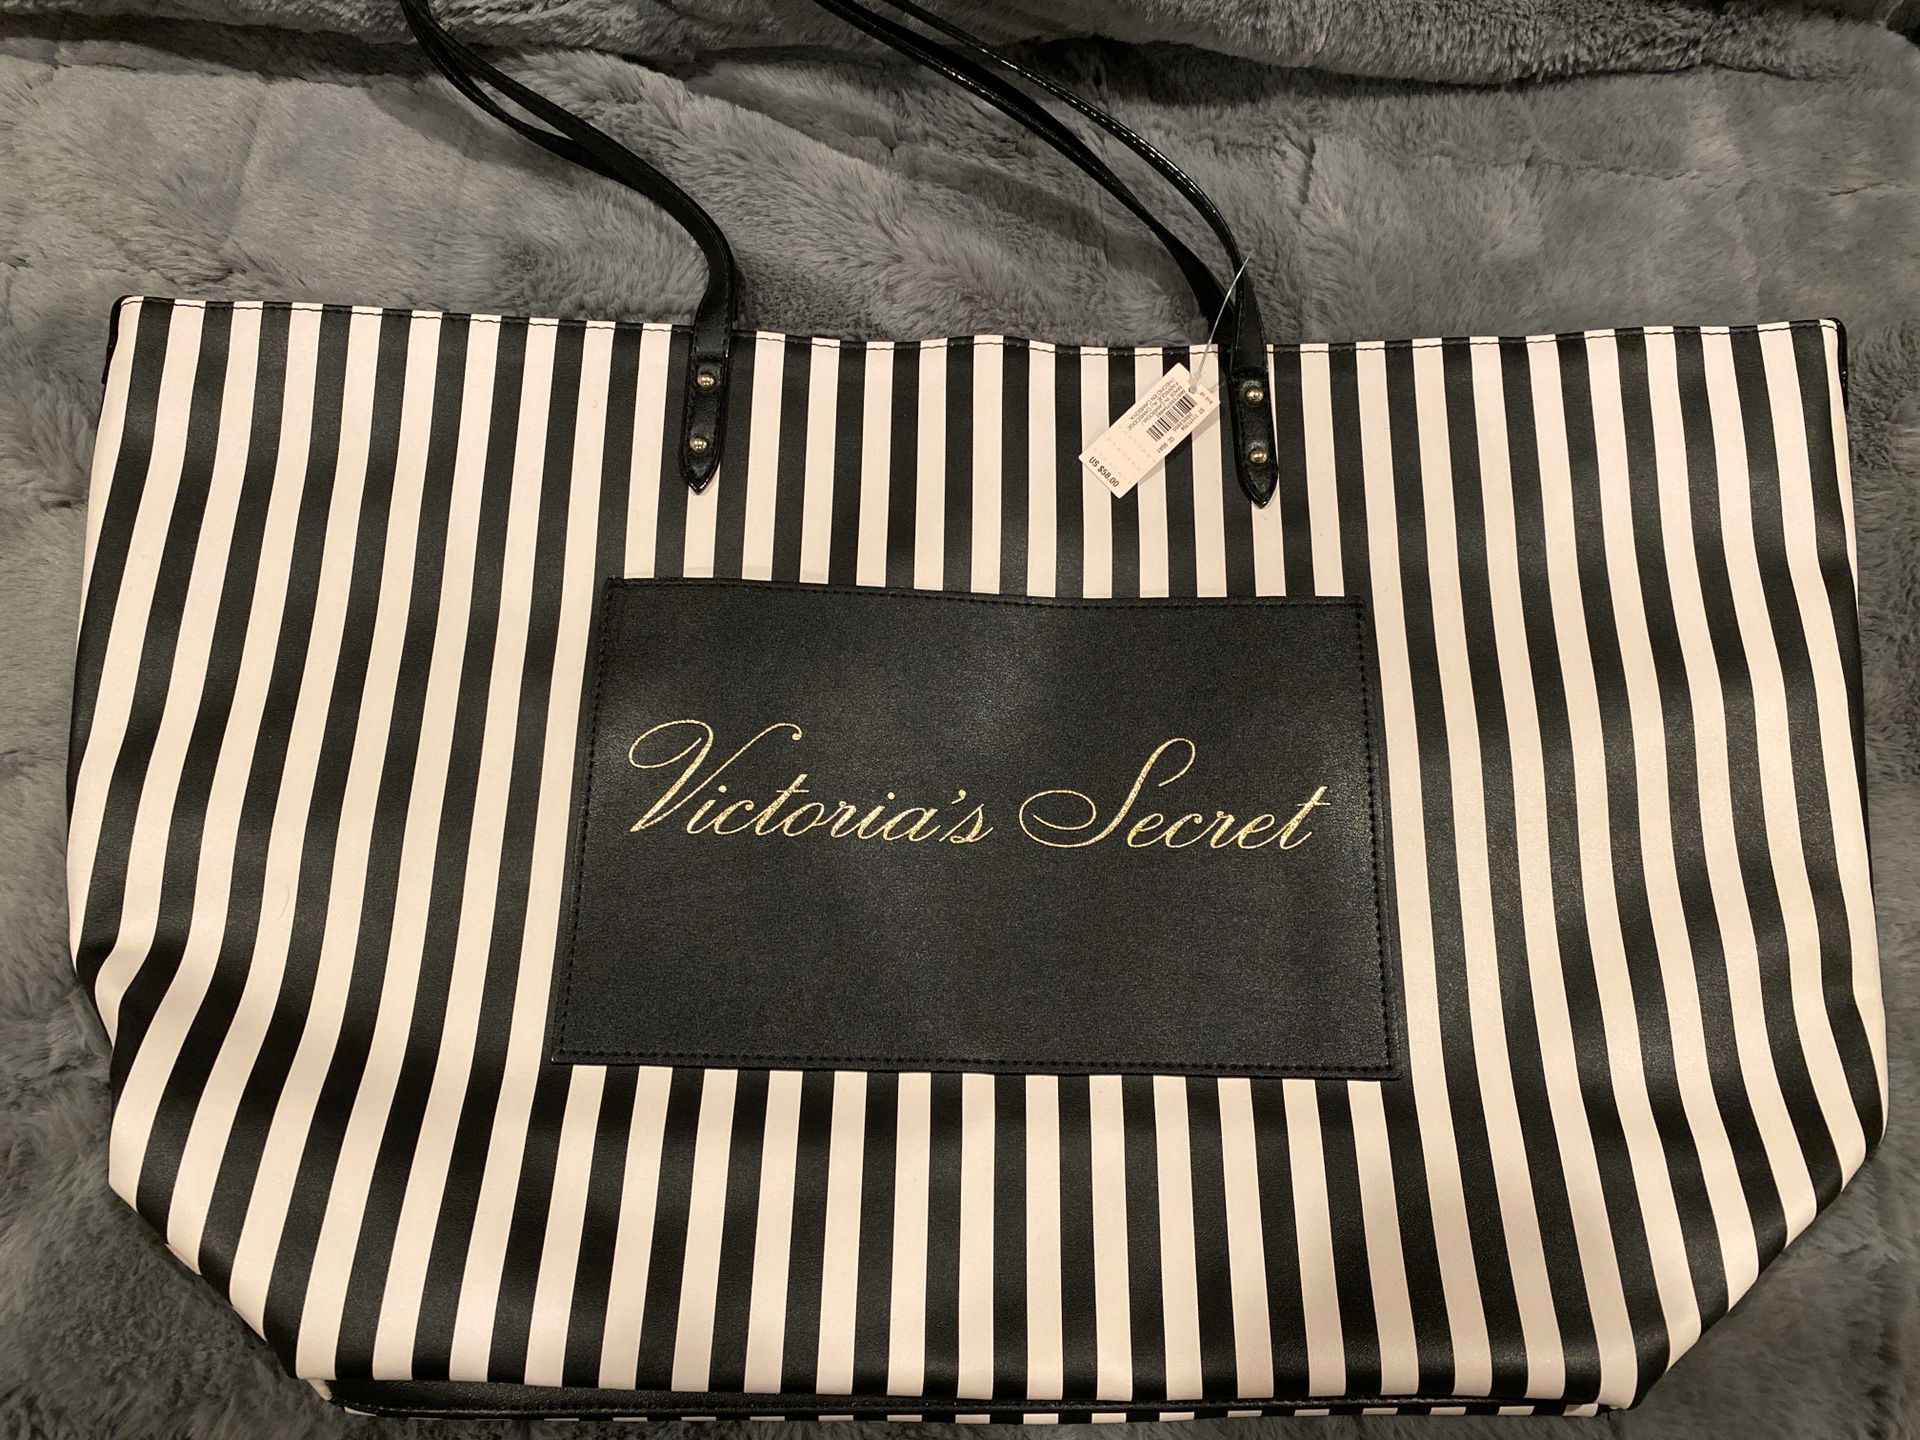 Brand New Victoria’s Secret Tote Bag